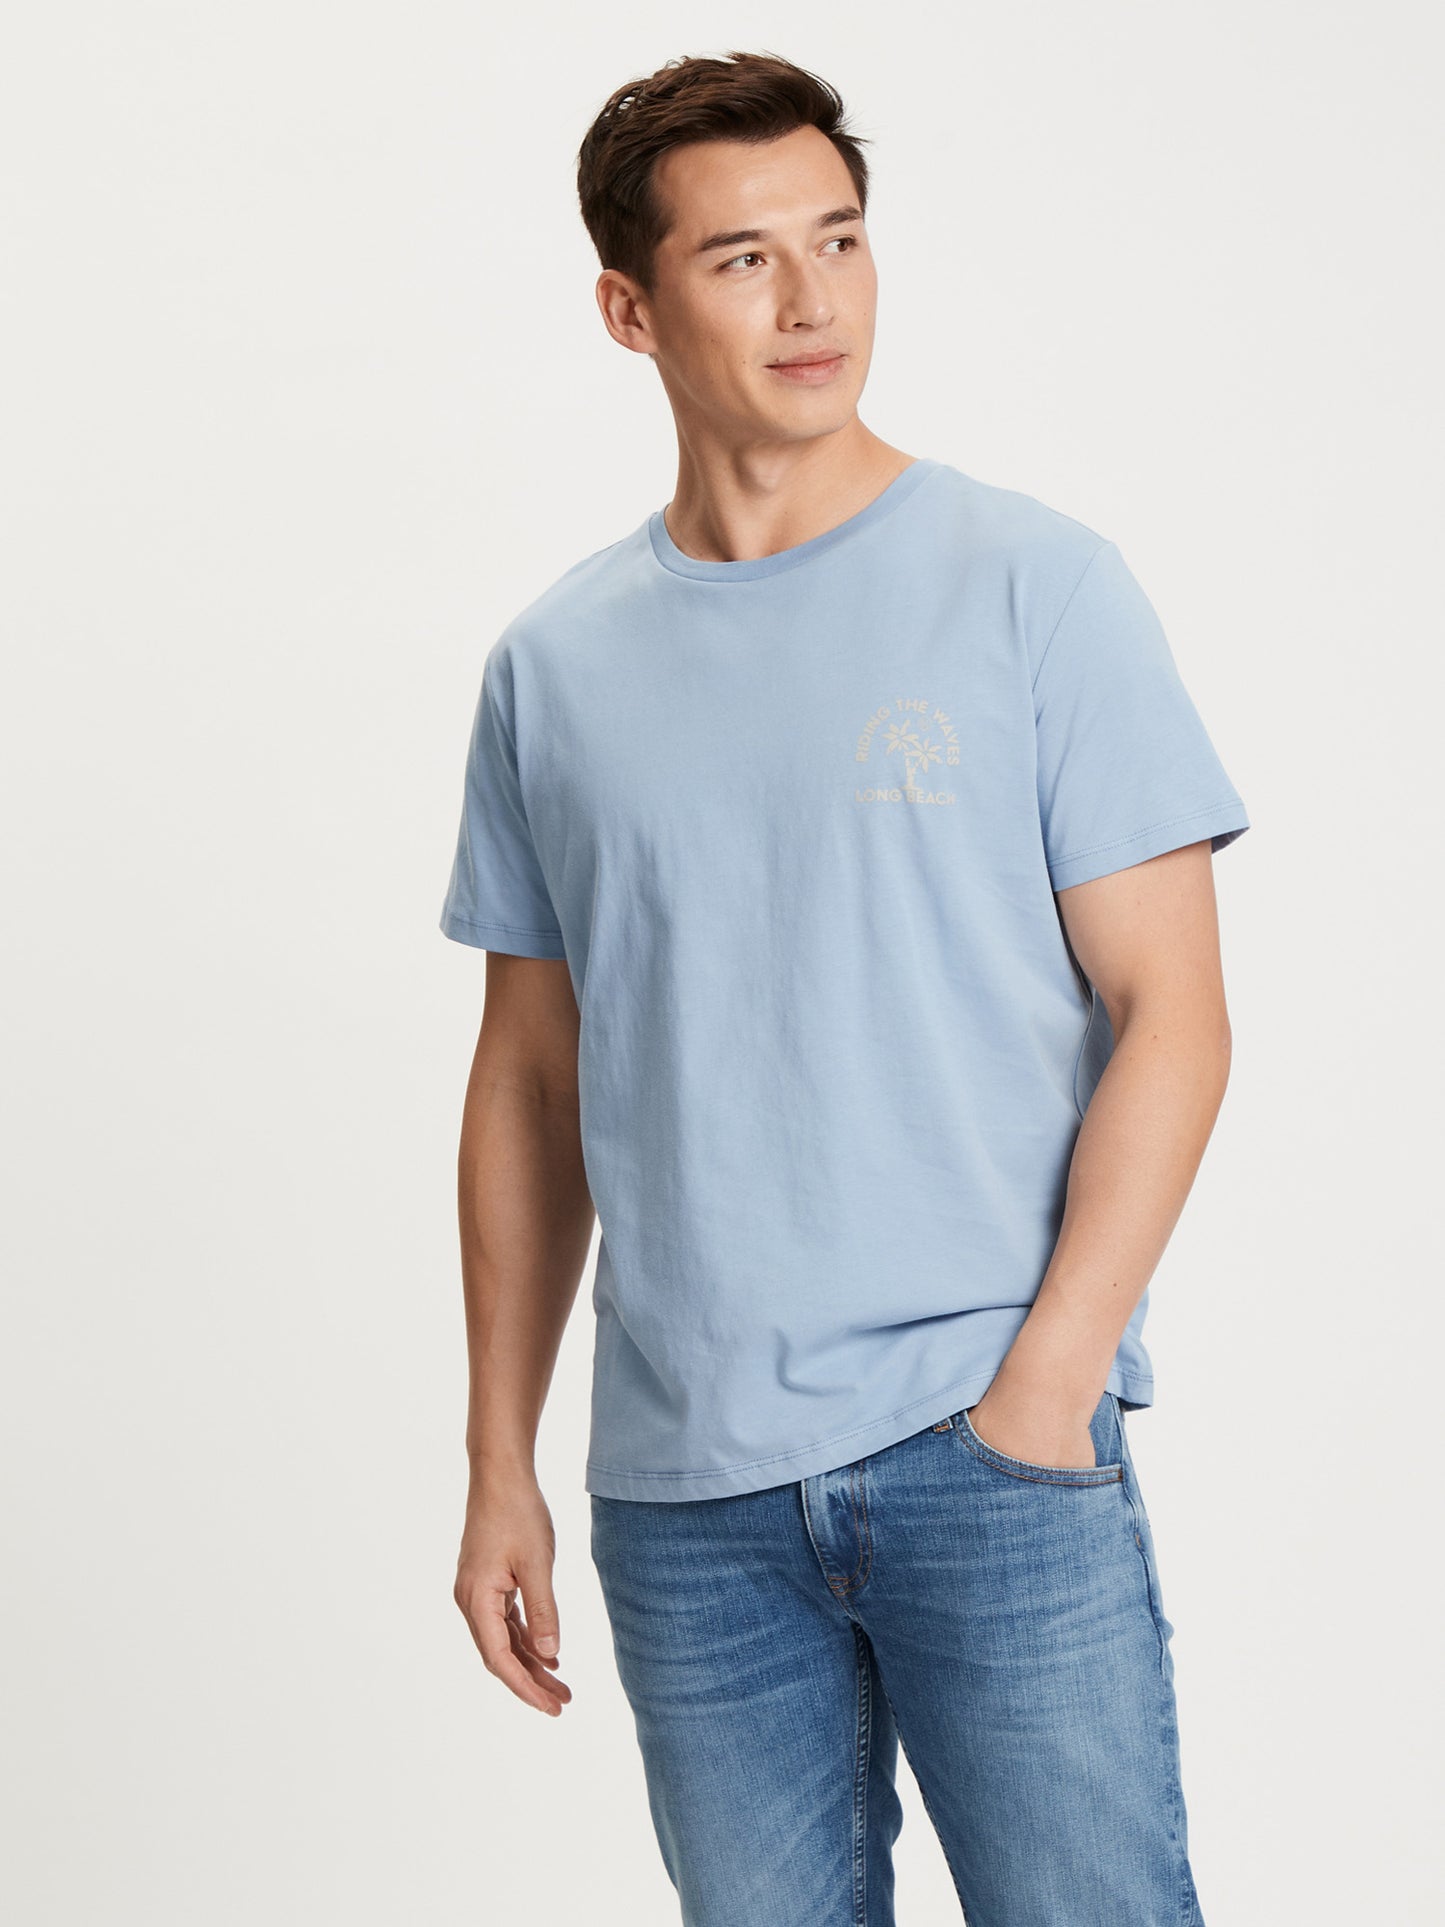 Herren Regular T-Shirt mit platziertem Statement-Print blau.